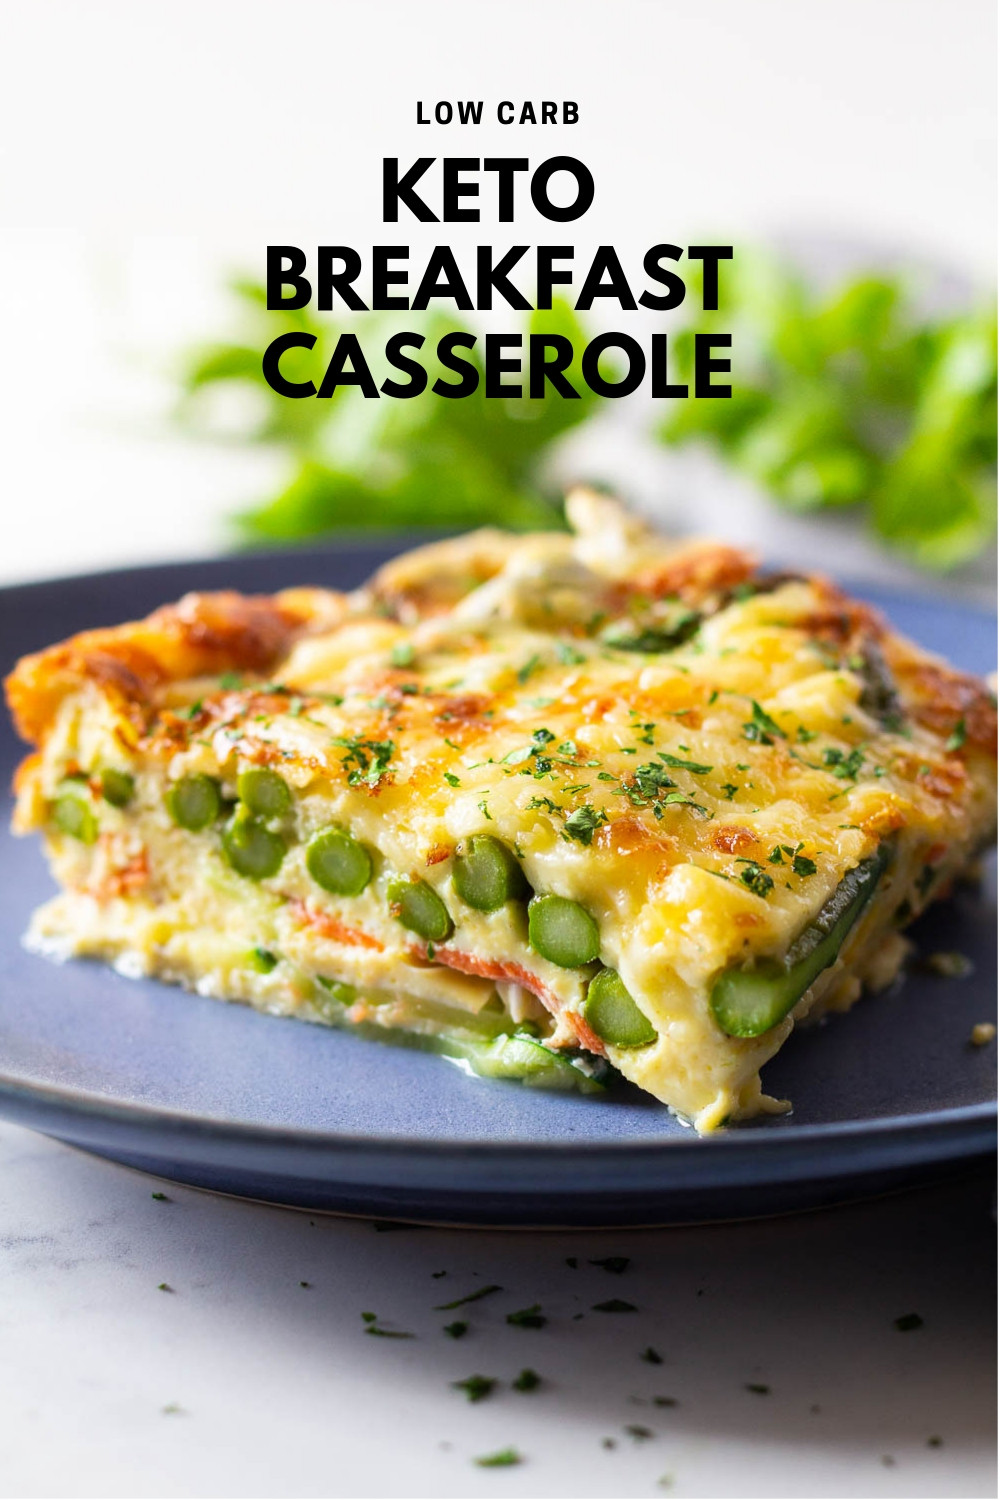 Keto Video Recipes Breakfast
 Easy Keto Breakfast Casserole Green Healthy Cooking